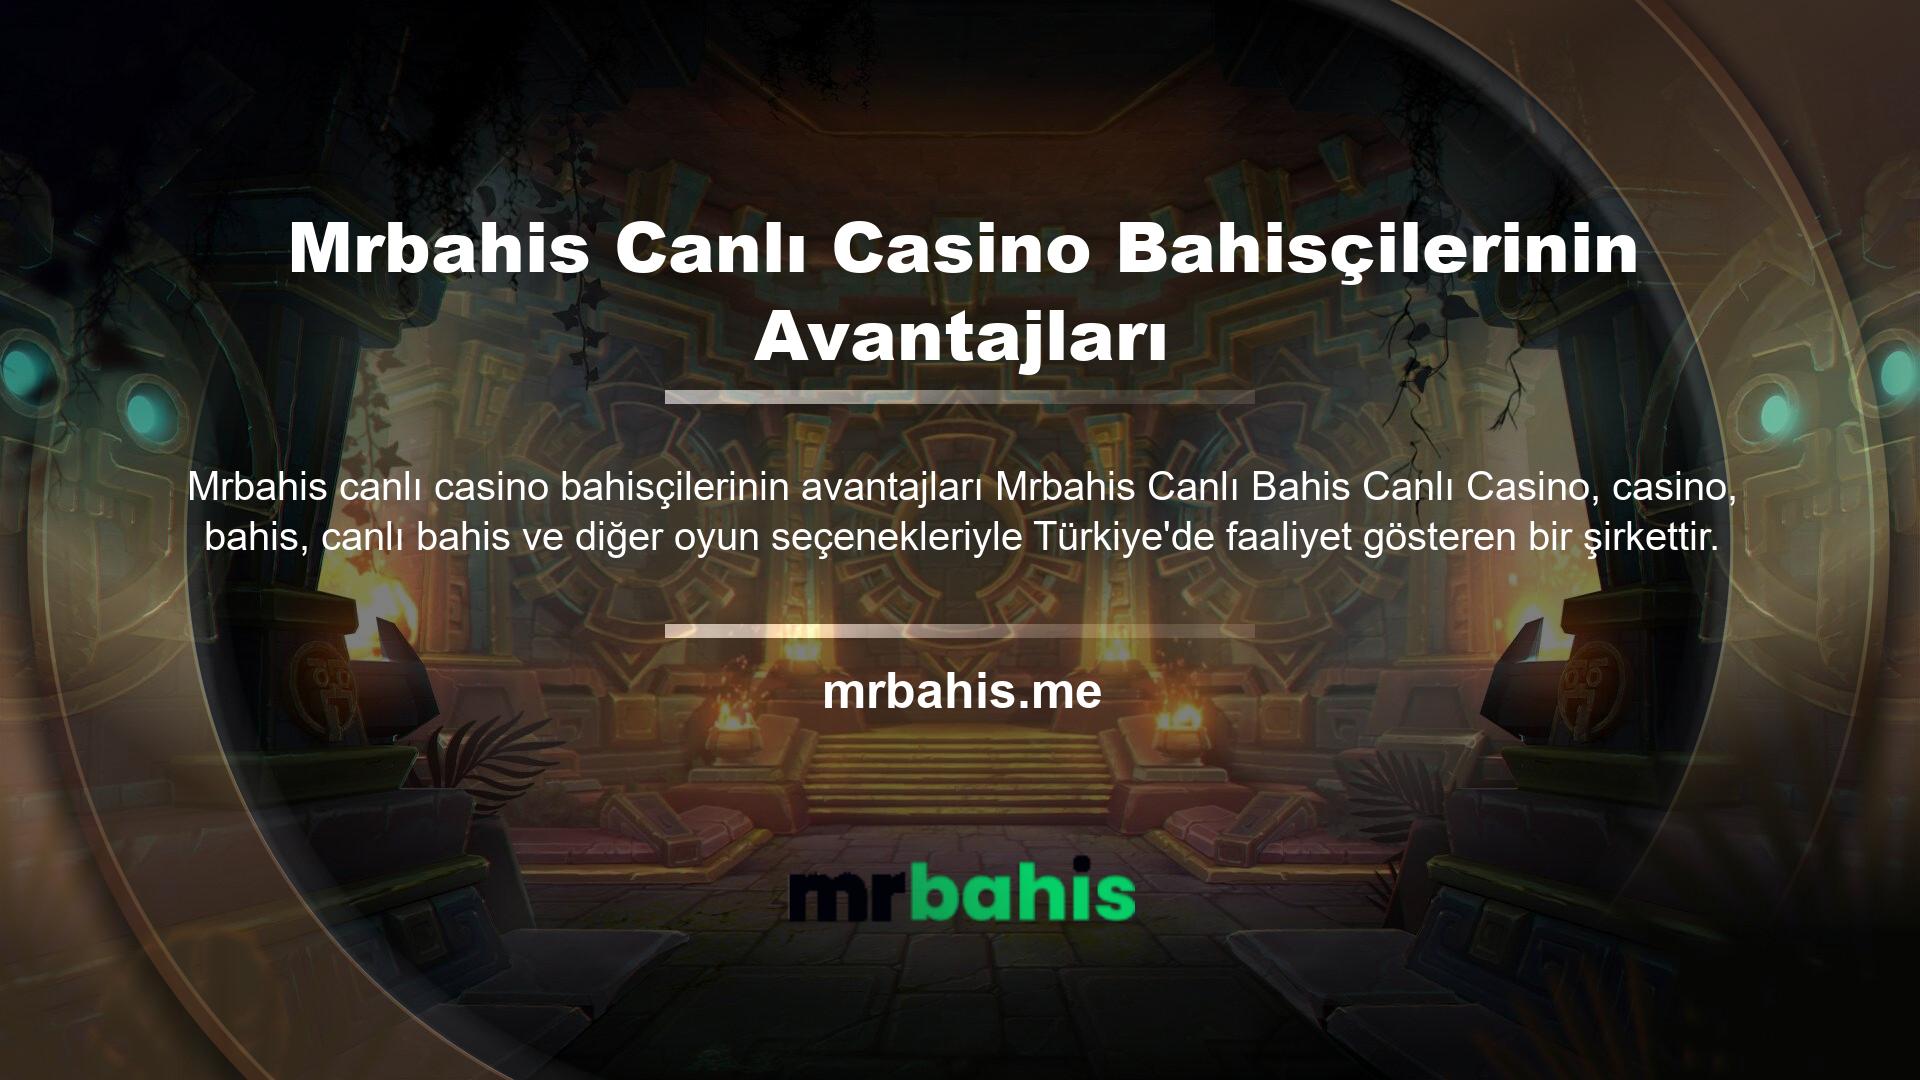 Mrbahis canlı casino bahisçi ödül sitesi tamamen profesyonel bir kadro tarafından yönetilmektedir ve bu da onu en ünlü bahis sitelerinden biri haline getirmektedir